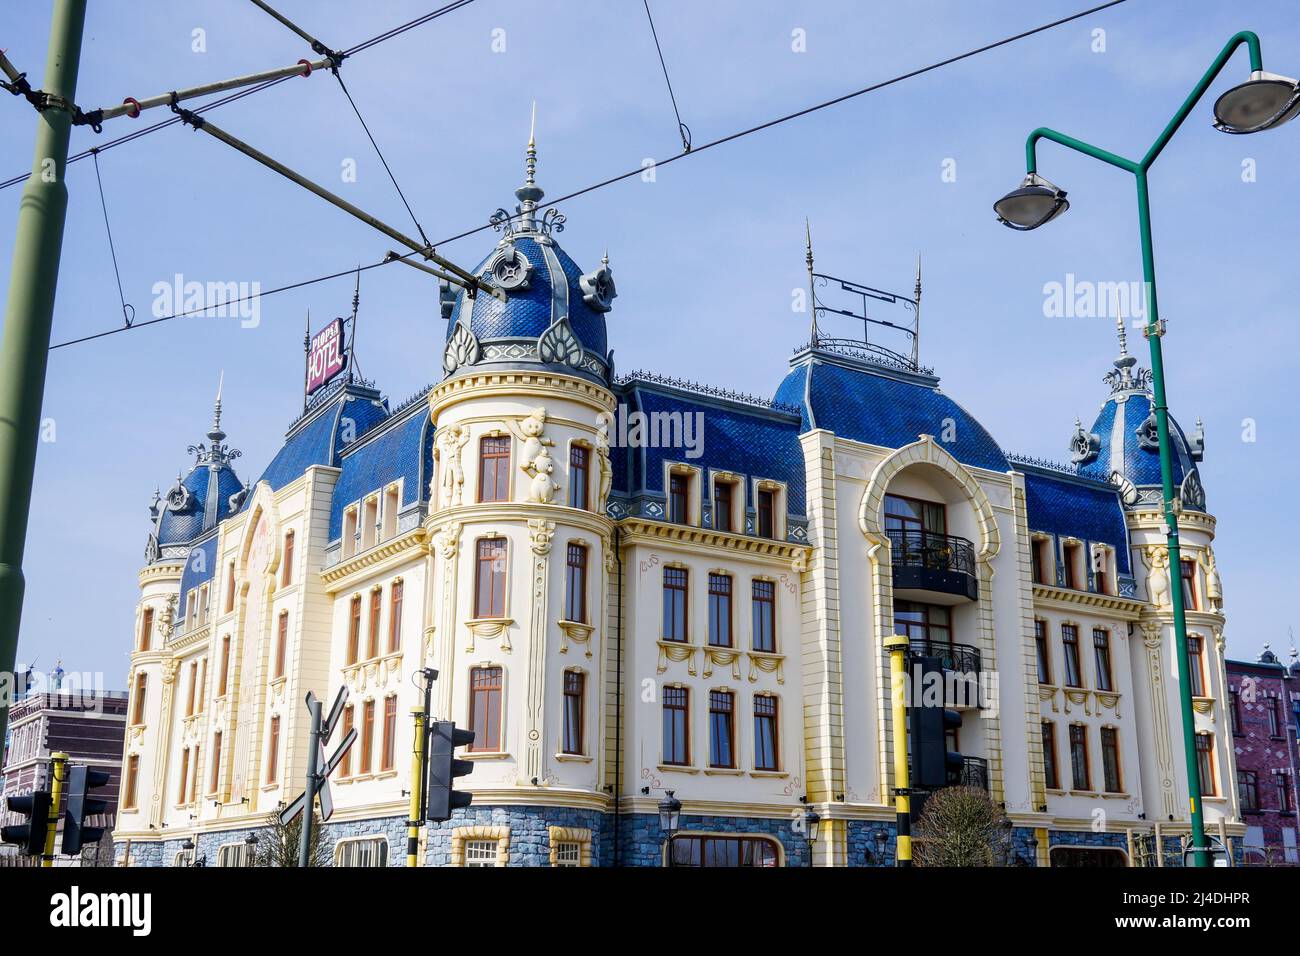 Hotel in Plopsaland amusement park, De Panne - La Panne, Belgium Stock  Photo - Alamy